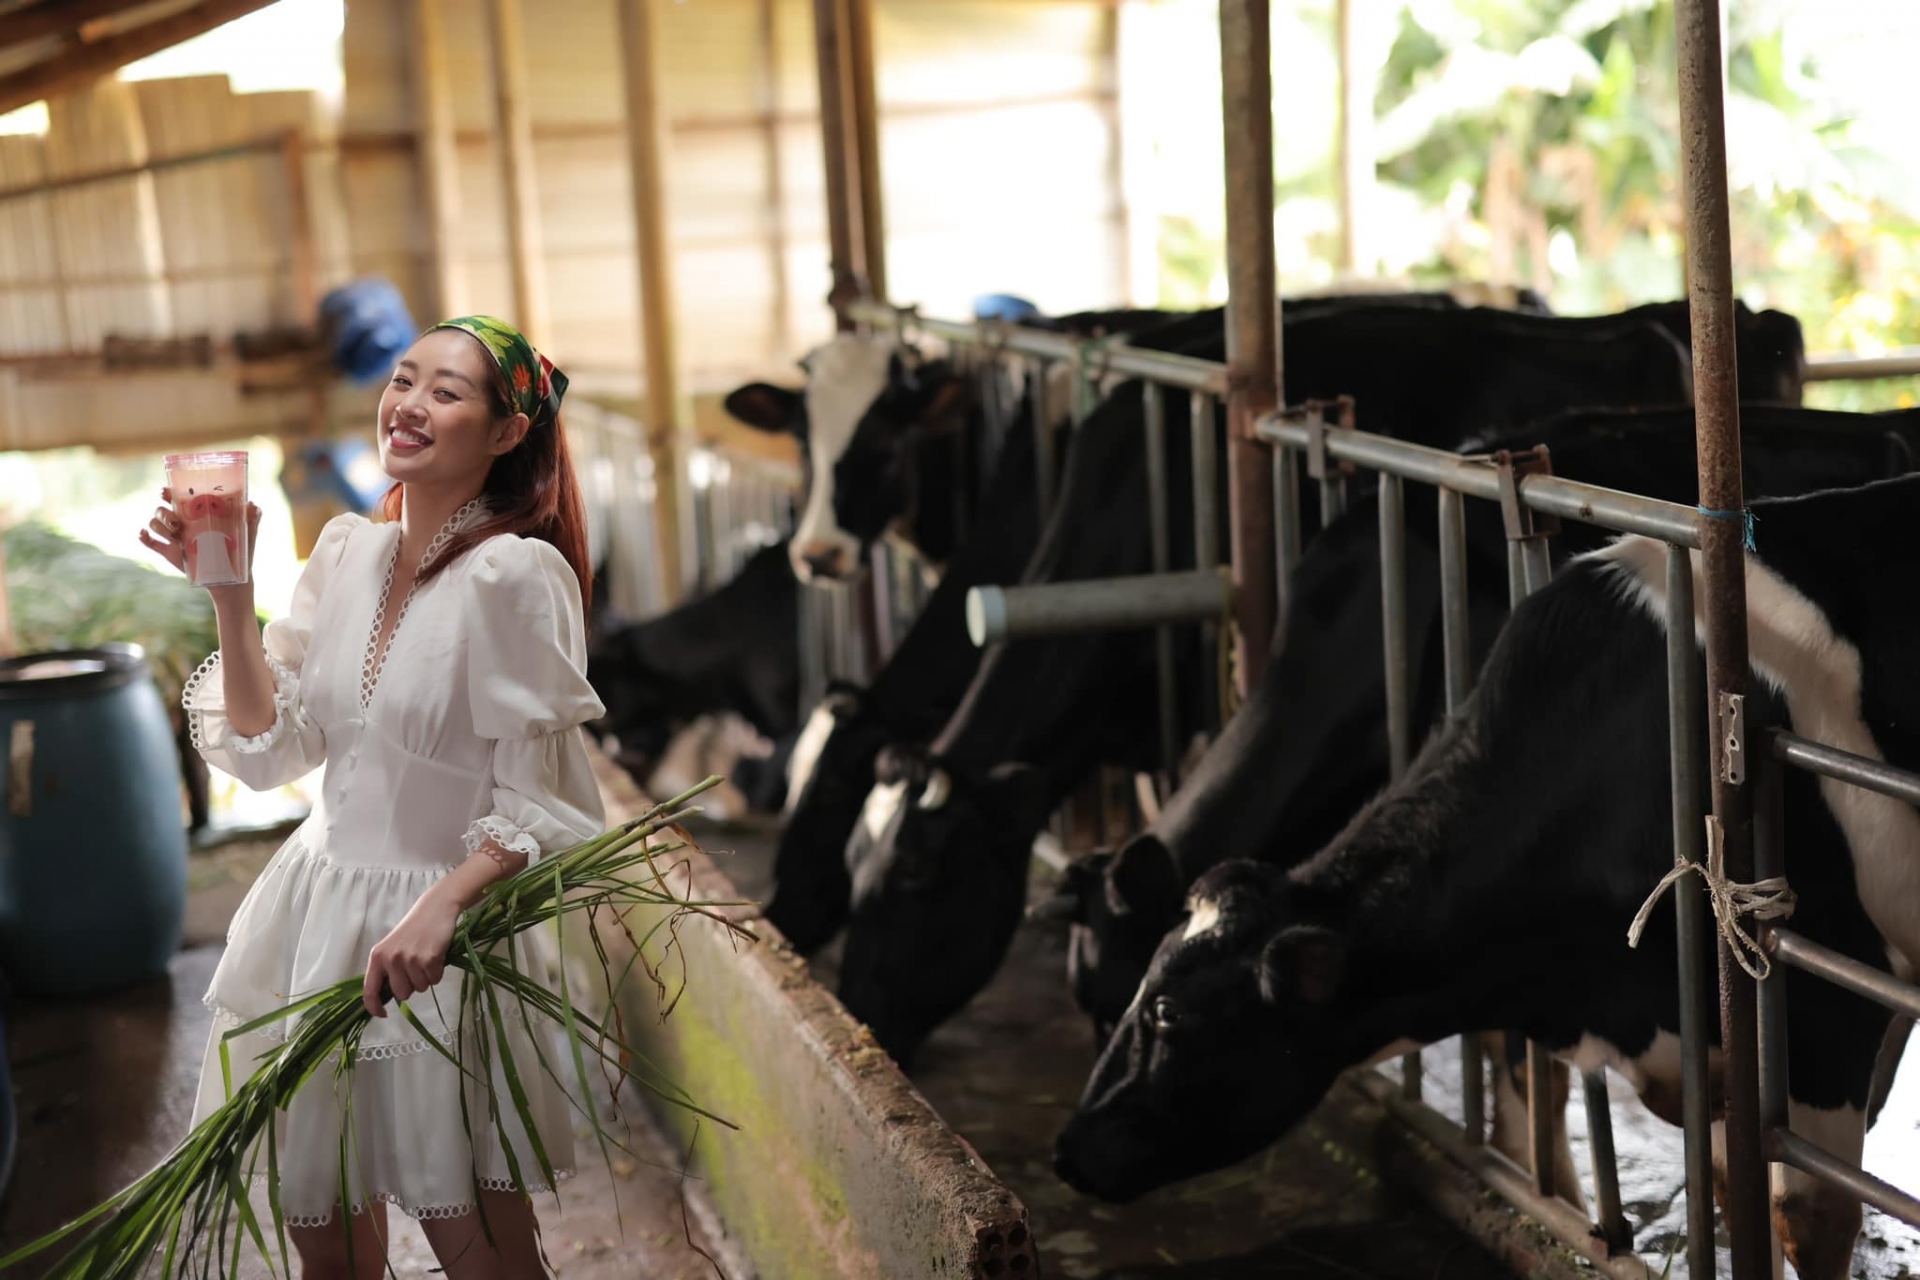 Hoa hậu Khánh Vân khám phá trang trại làm sữa tươi nguyên chất 100%. Cô diện đầm, đội khăn đáng yêu trong trang trại khiến các fan vô cùng thích thú.